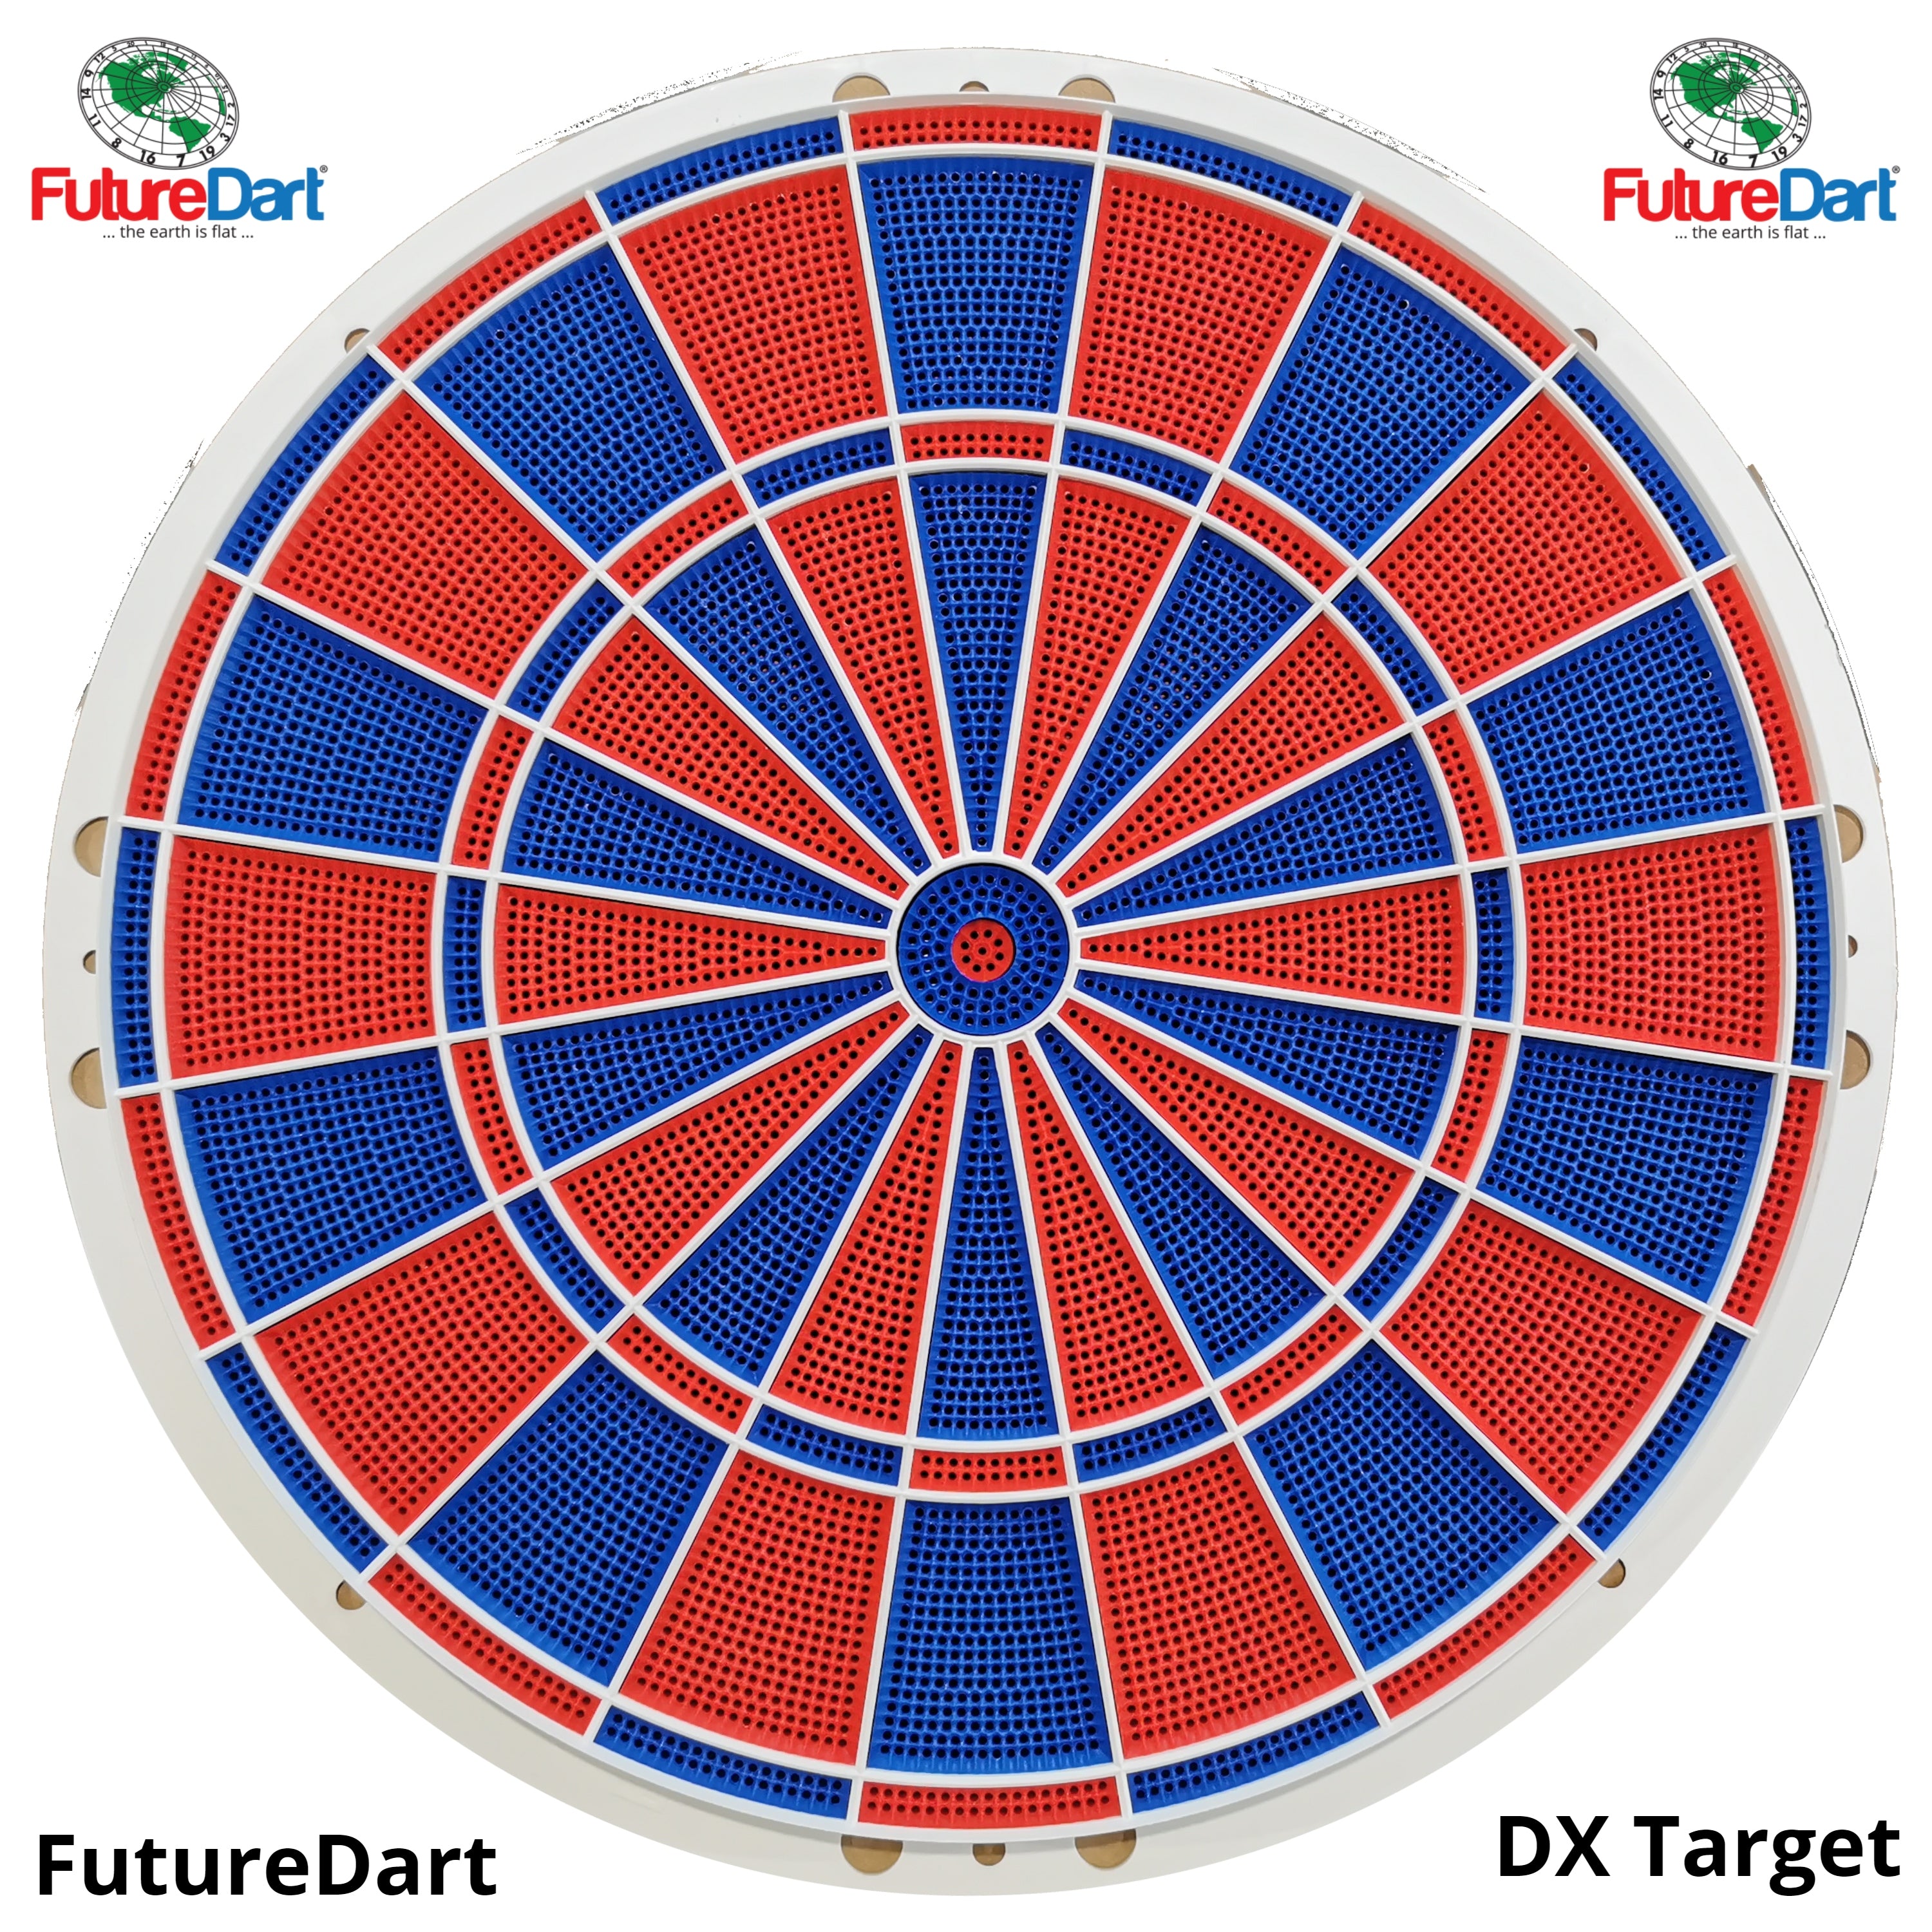 Tarcza FutureDart DX, tarcza do darta, okrąg do rzucania strzałkami lwa, Magic Dart, identyczne